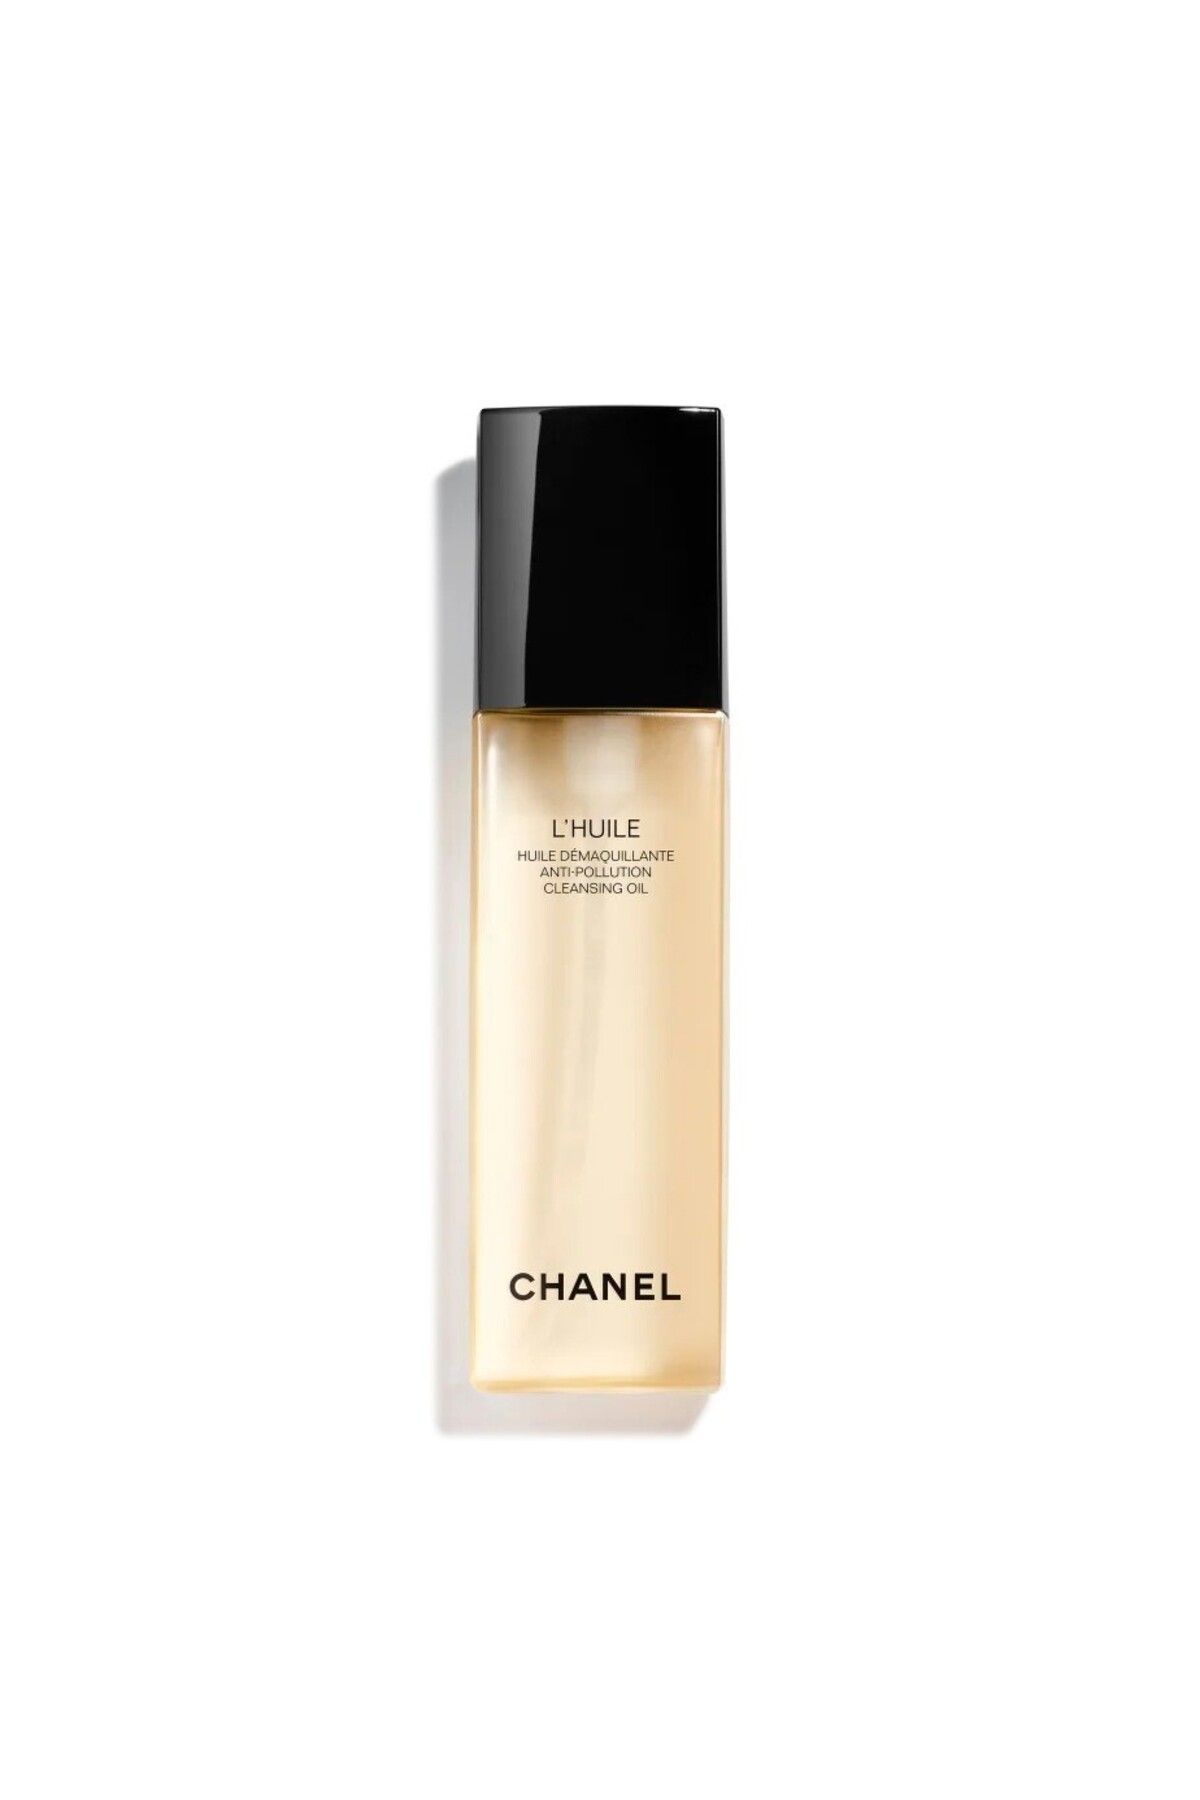 Chanel L’HUILE - Yumuşaklık, Aydınlık Görünüm Veren Kirlilik Karşıtı Yüz Ve Makyaj Temizleme Yağı 150 ml